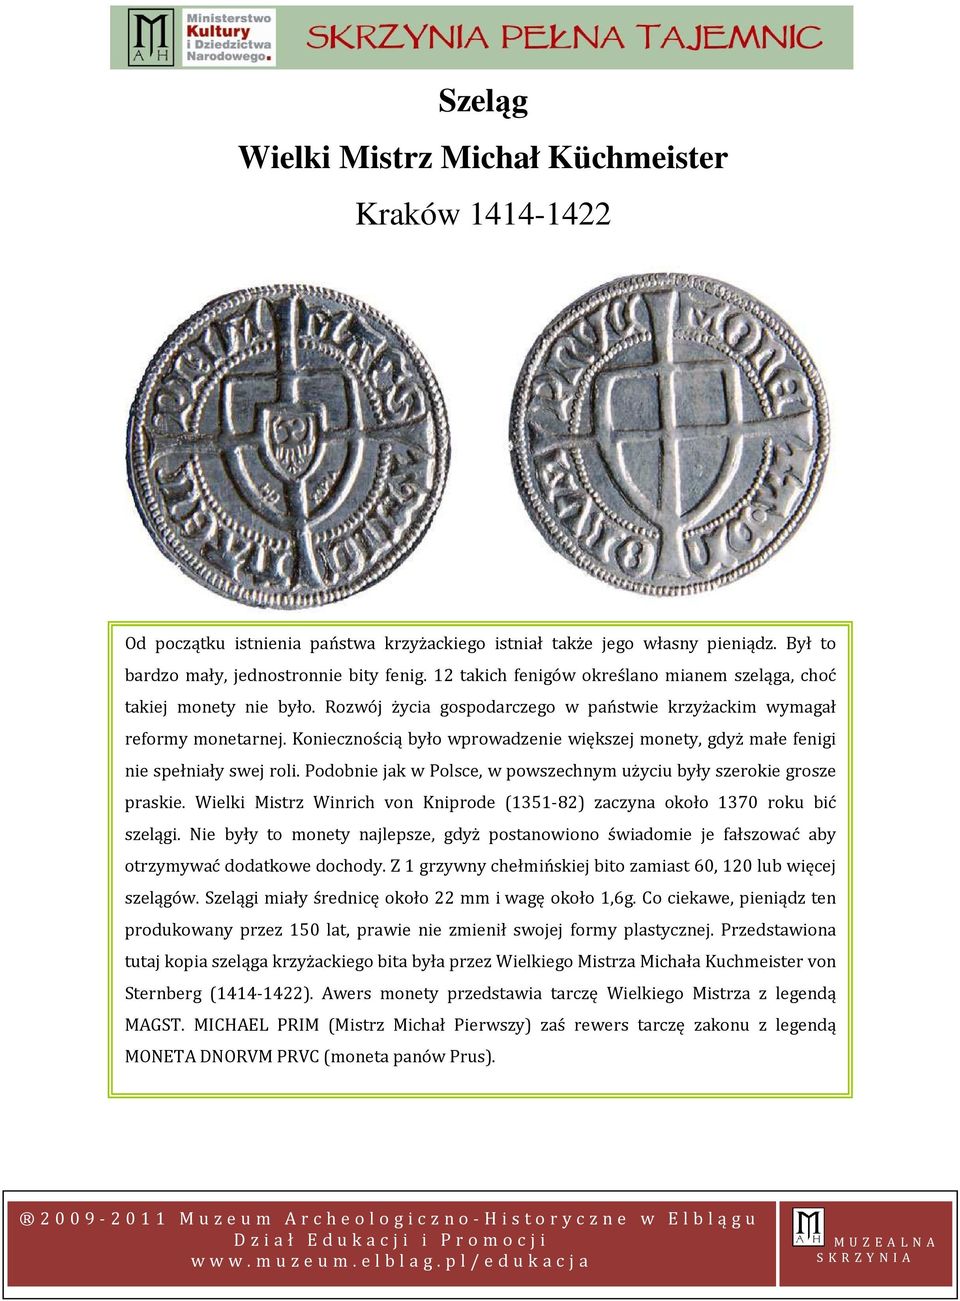 Koniecznością było wprowadzenie większej monety, gdyż małe fenigi nie spełniały swej roli. Podobnie jak w Polsce, w powszechnym użyciu były szerokie grosze praskie.